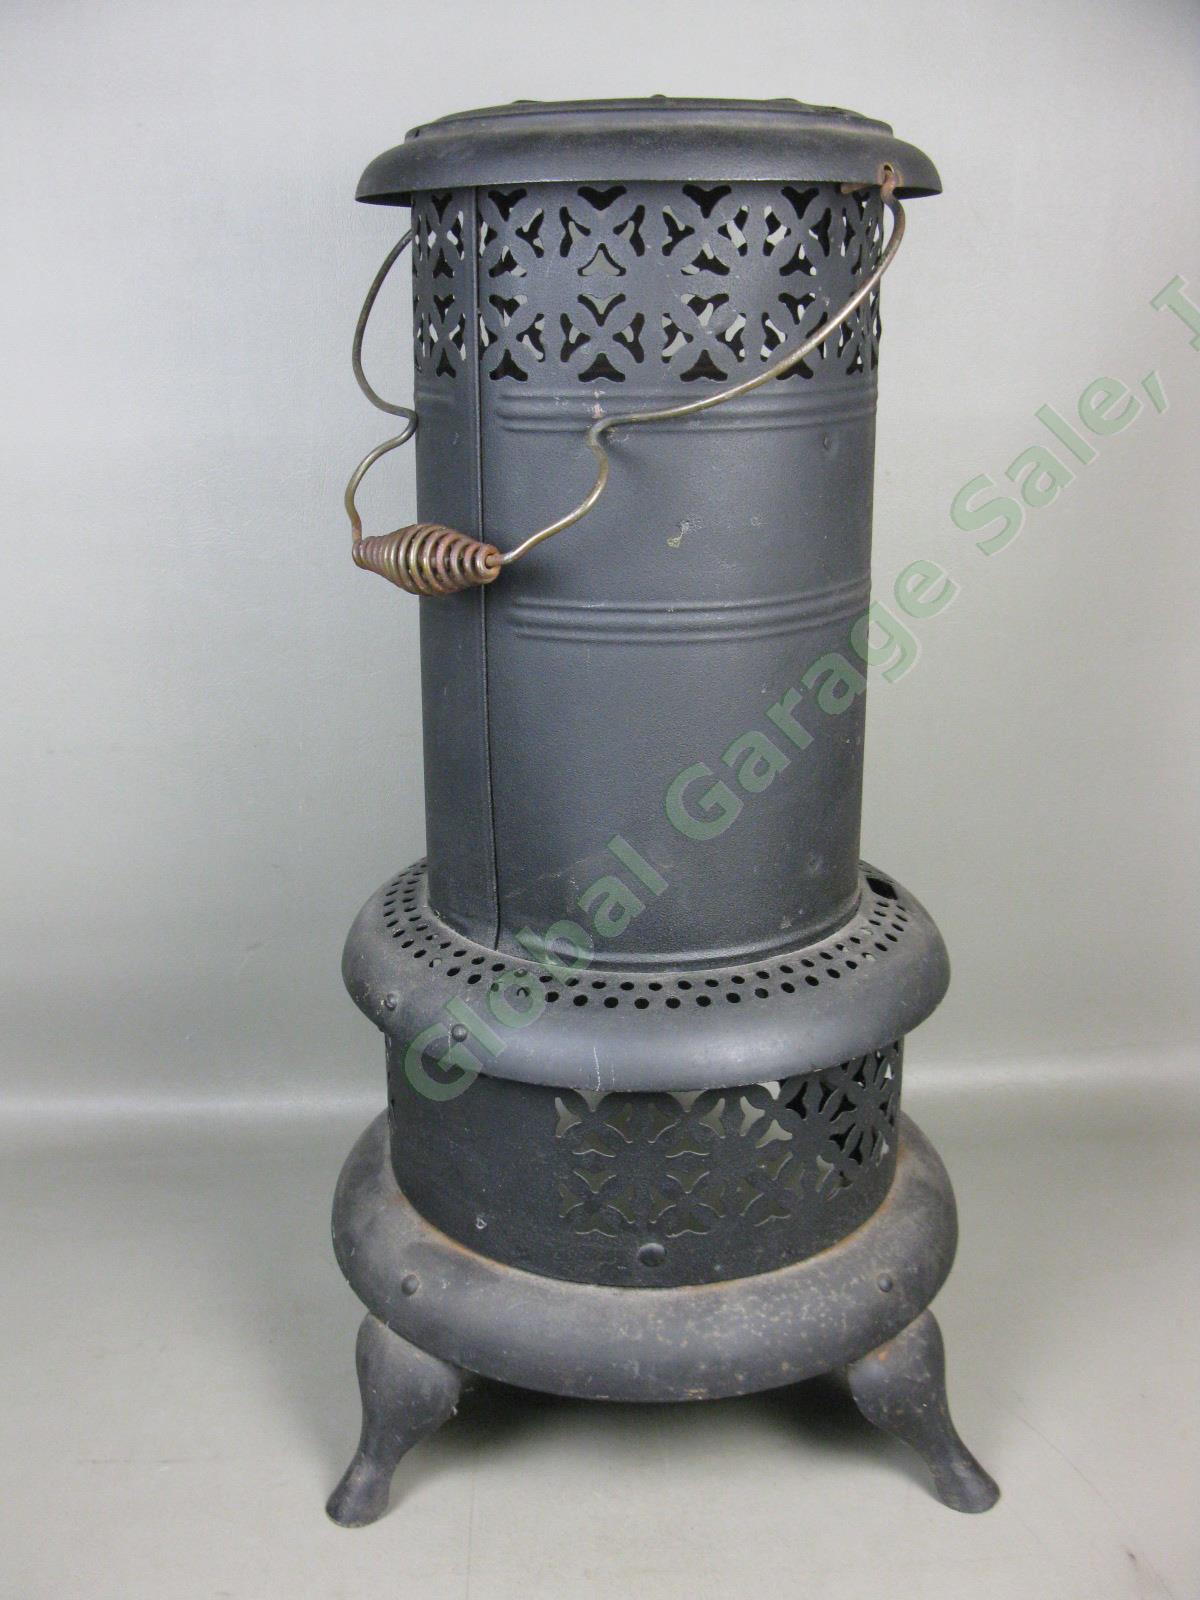 Vtg Antique Perfection Model Smokeless Kerosene Oil Heater Cabin Parlor Stove NR 4